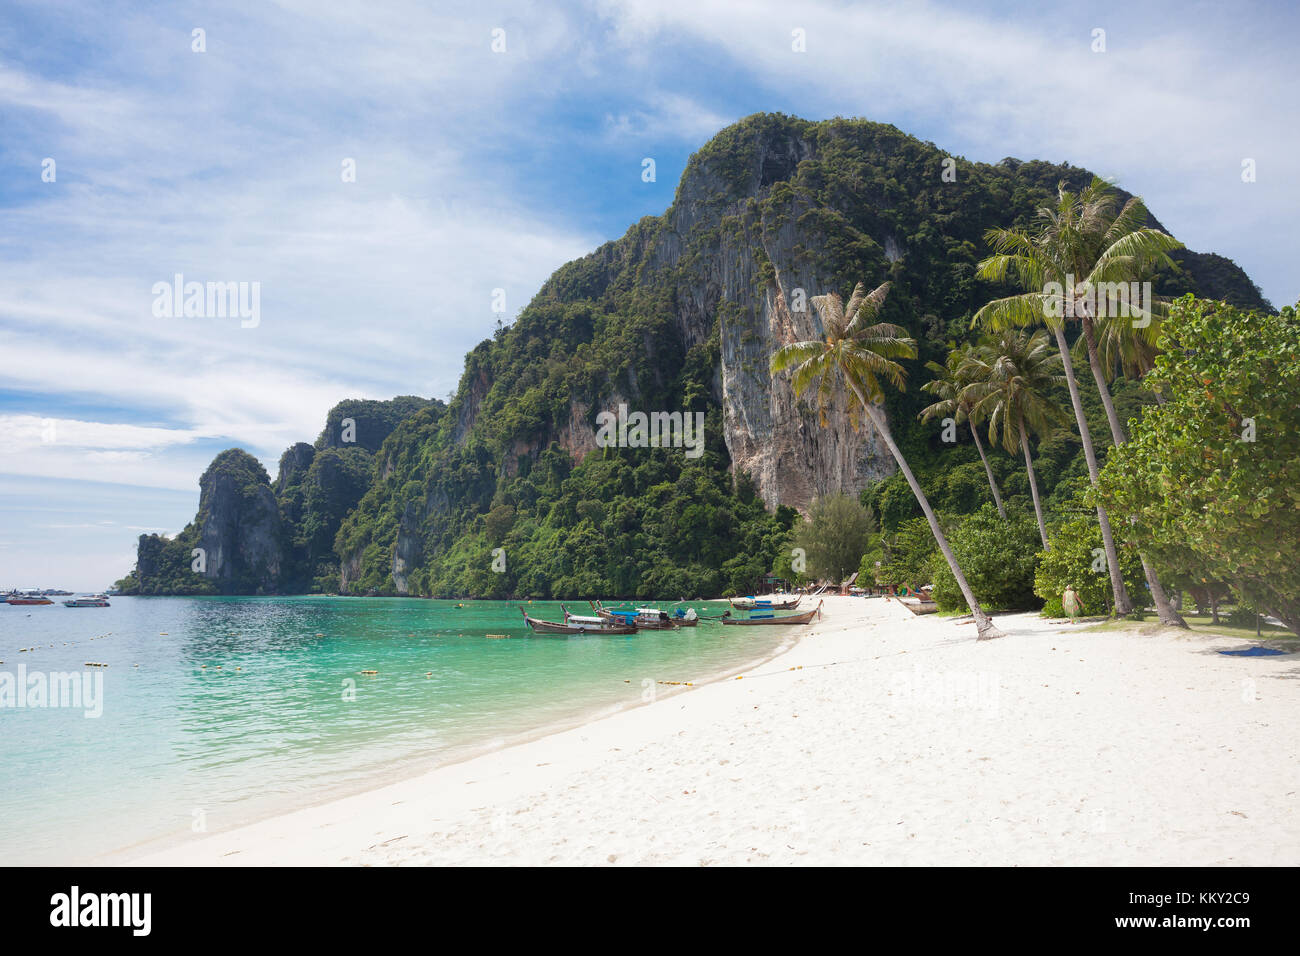 Thaïlande - repos à la plage de Ko Phi Phi Don - Krabi - Asie Banque D'Images